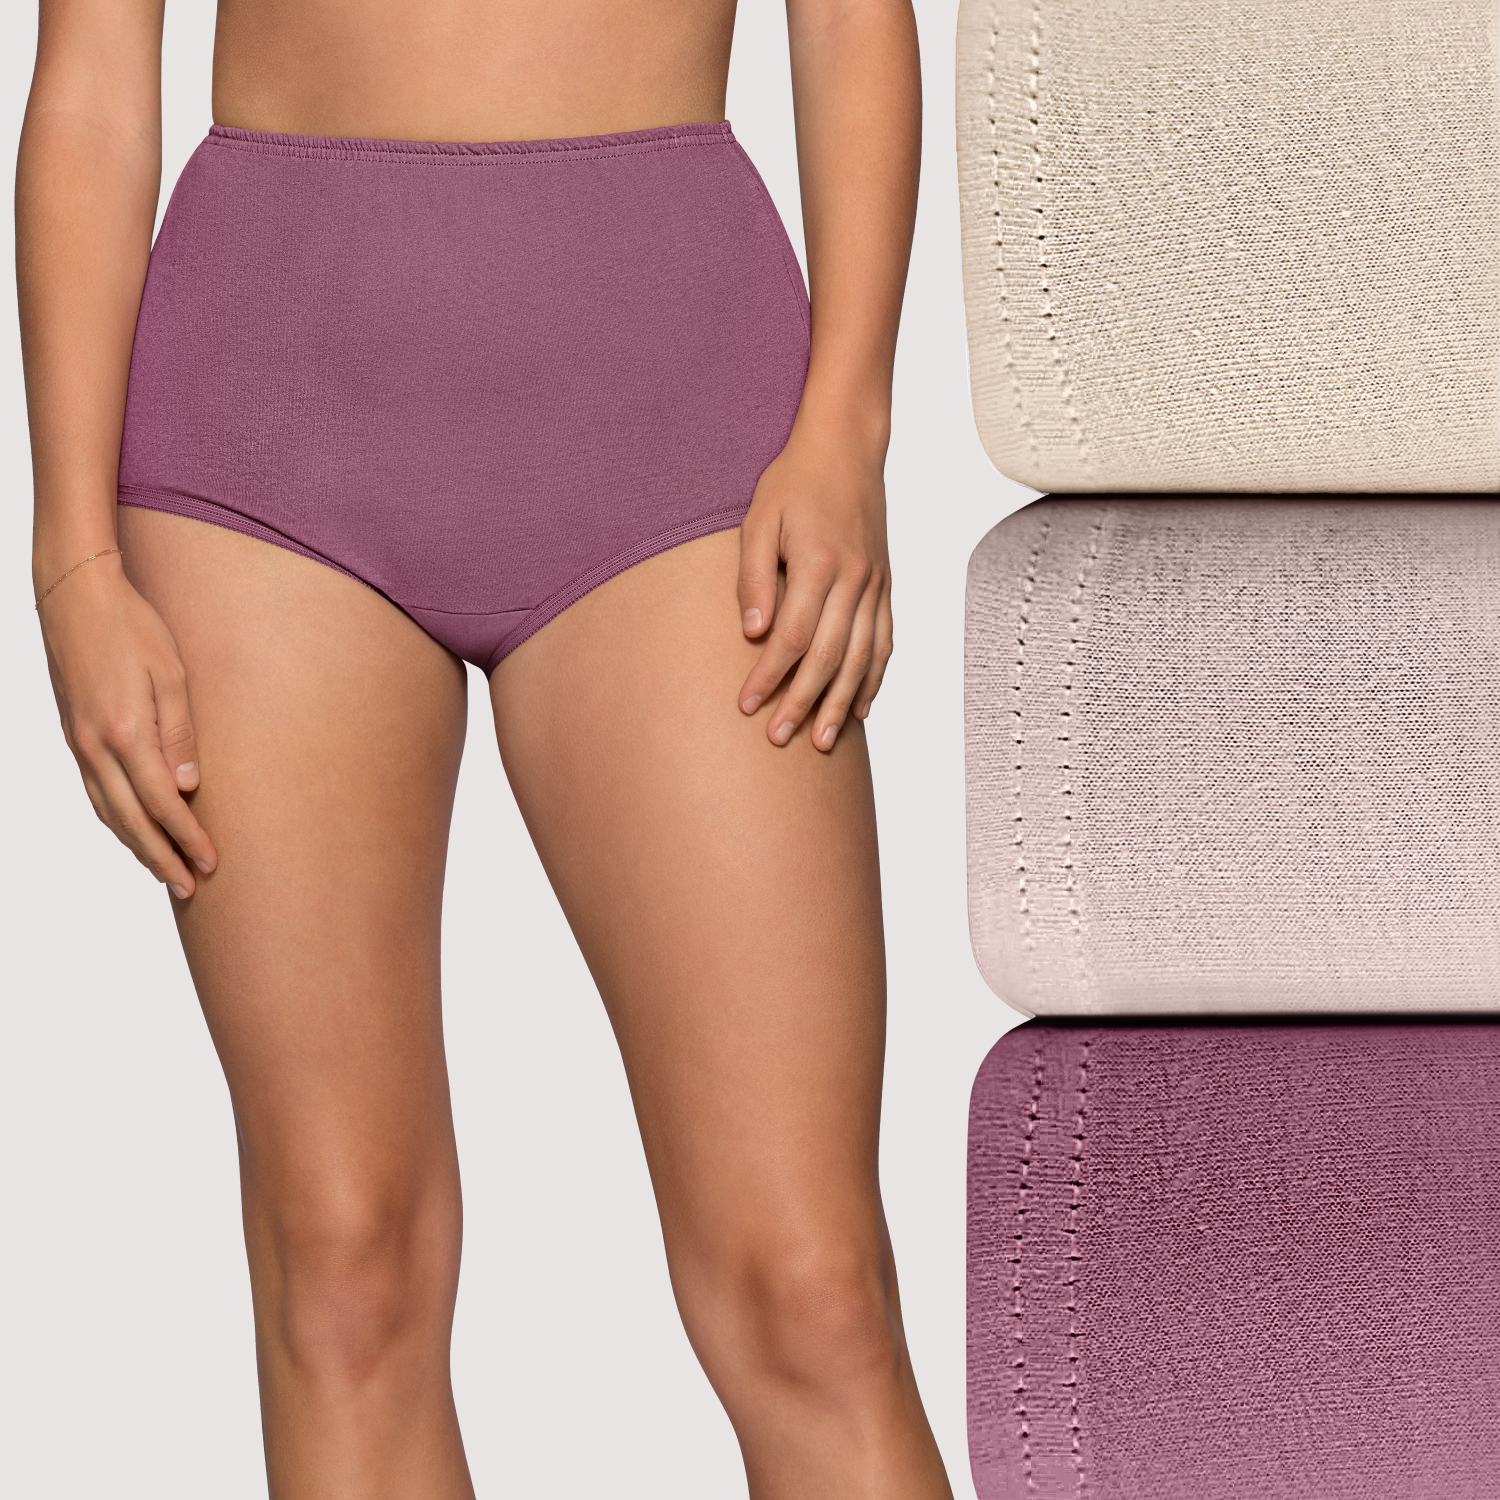 High Elastic Women Cotton Underwear Strapless Color Matching Bra